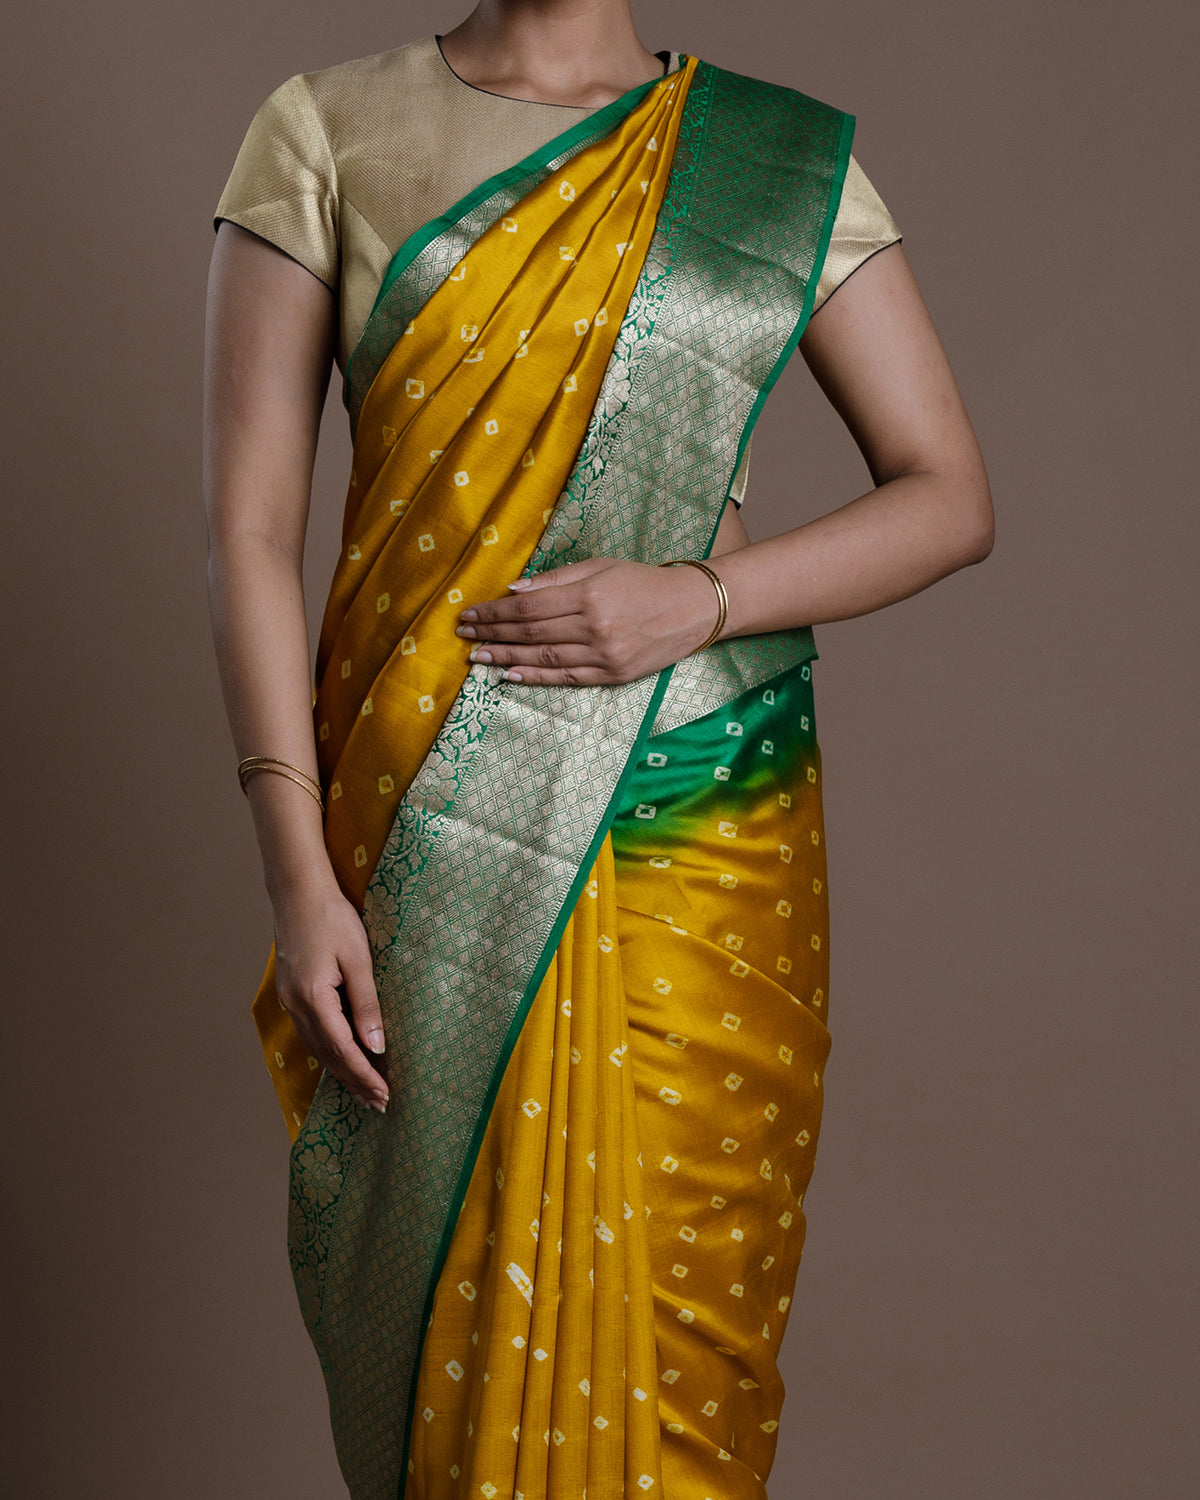 Yellow Banaras Silk Saree